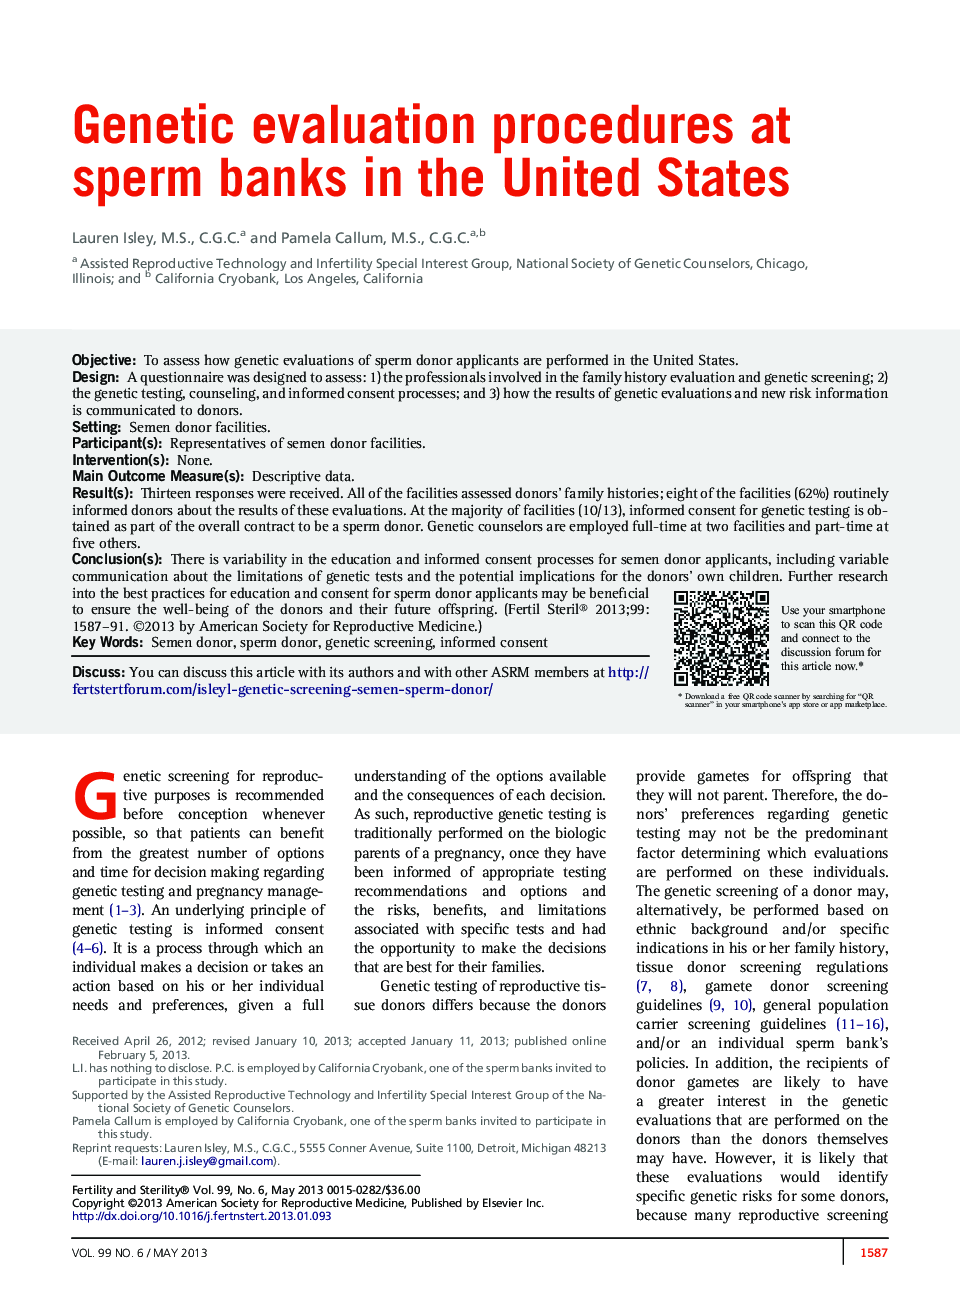 روش های ارزیابی ژنتیکی در بانک های اسپرم در ایالات متحده 